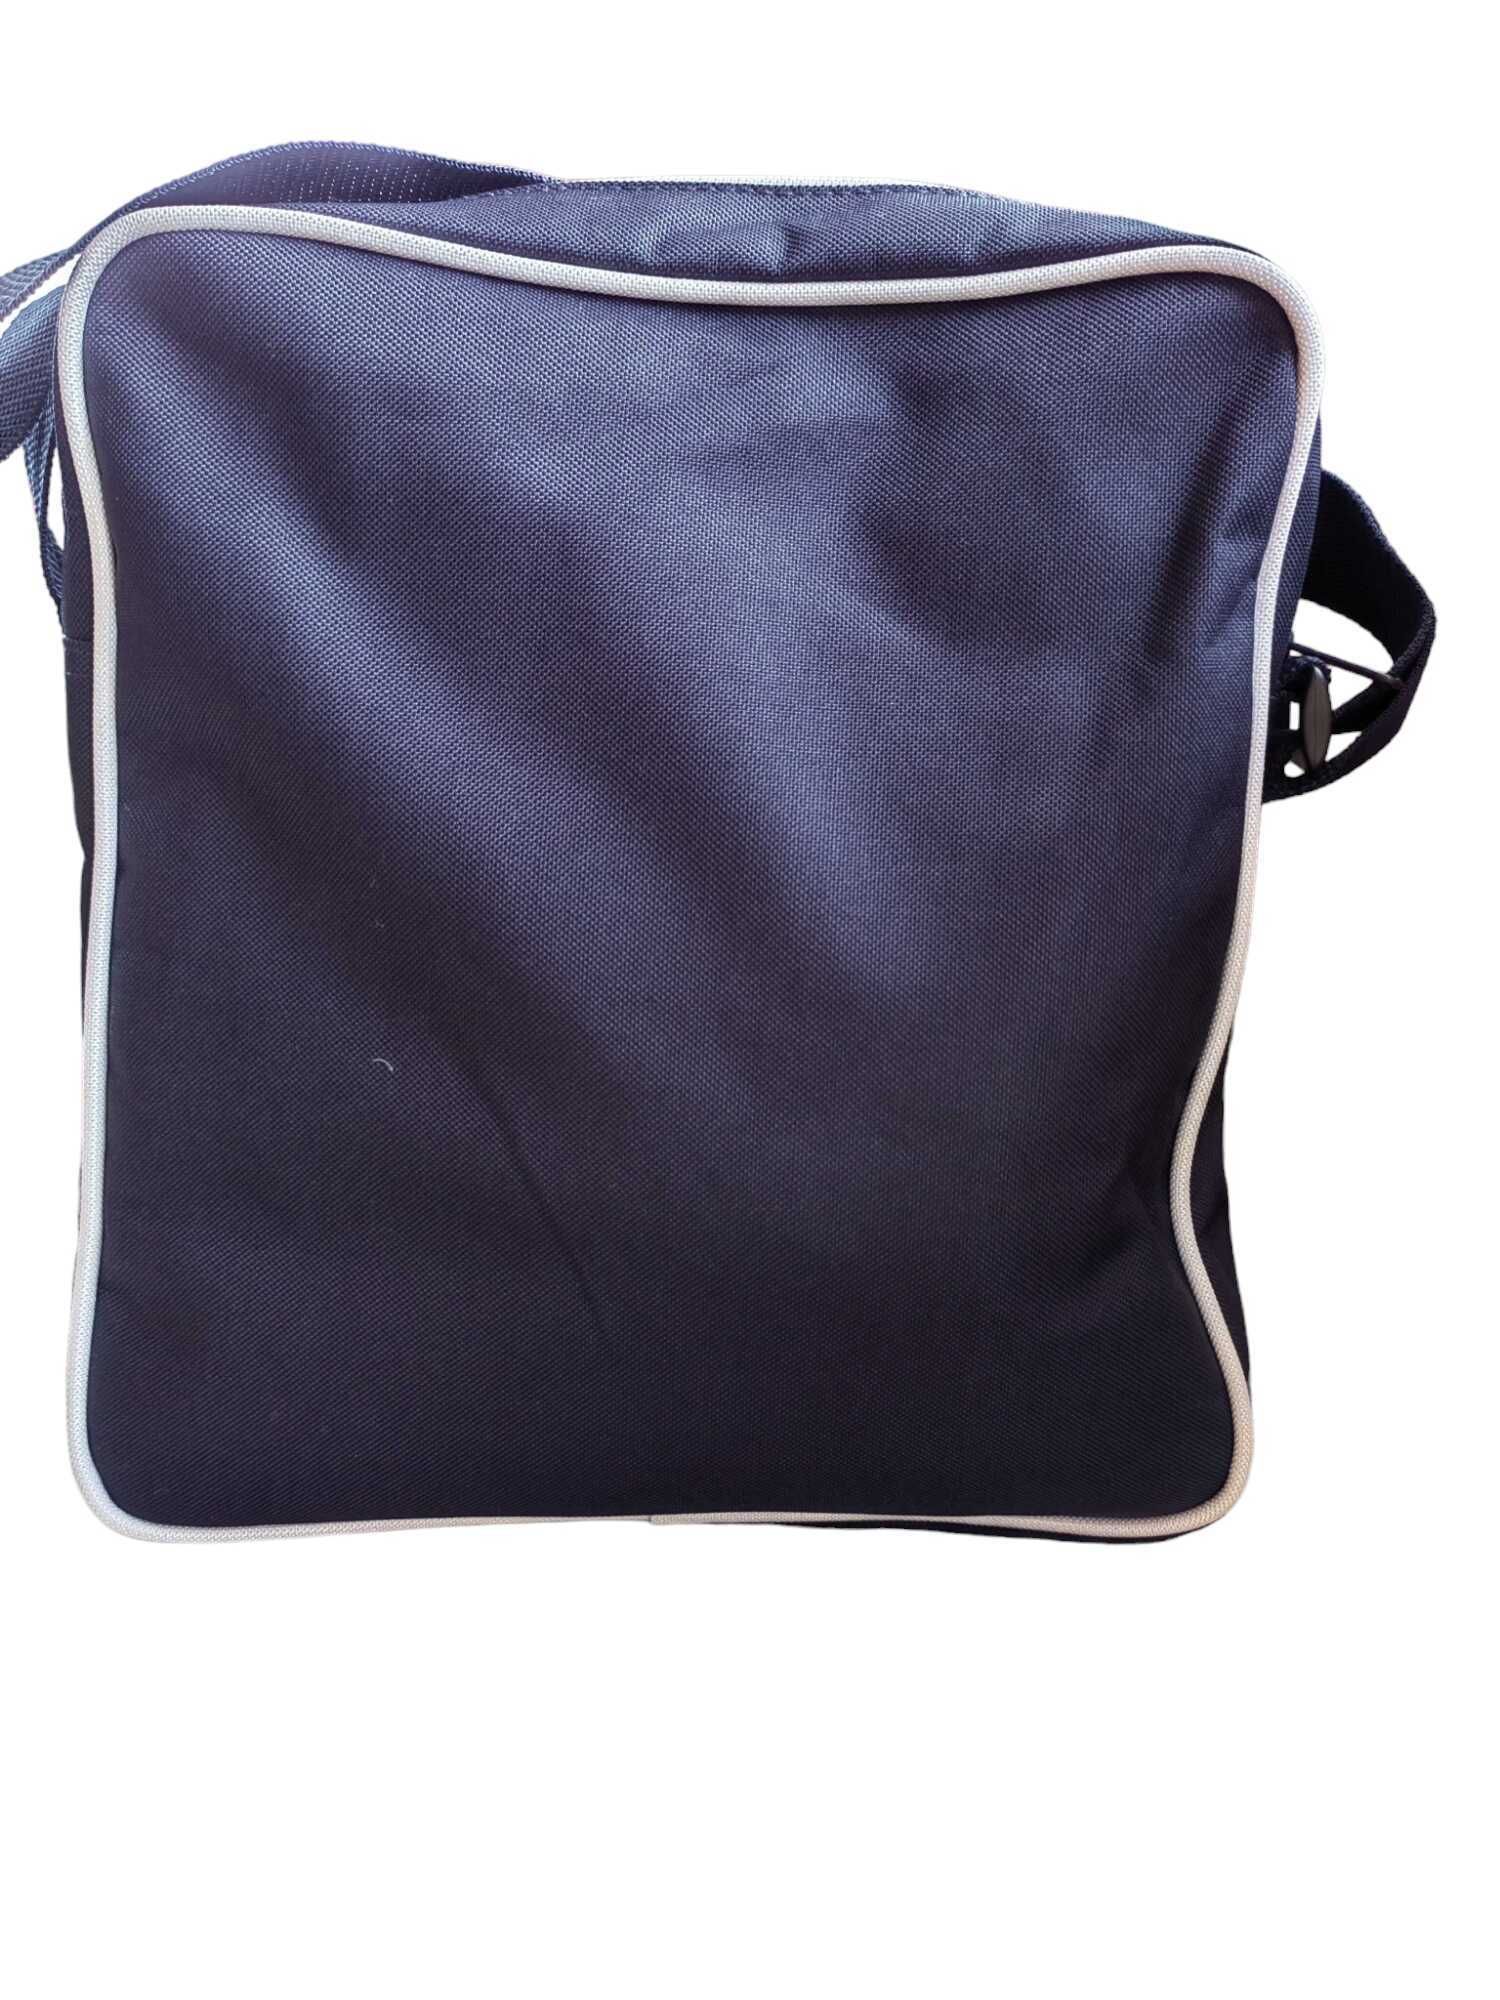 Чанта през рамо Bag Base, Унисекс, Синя, 30х28х8 см